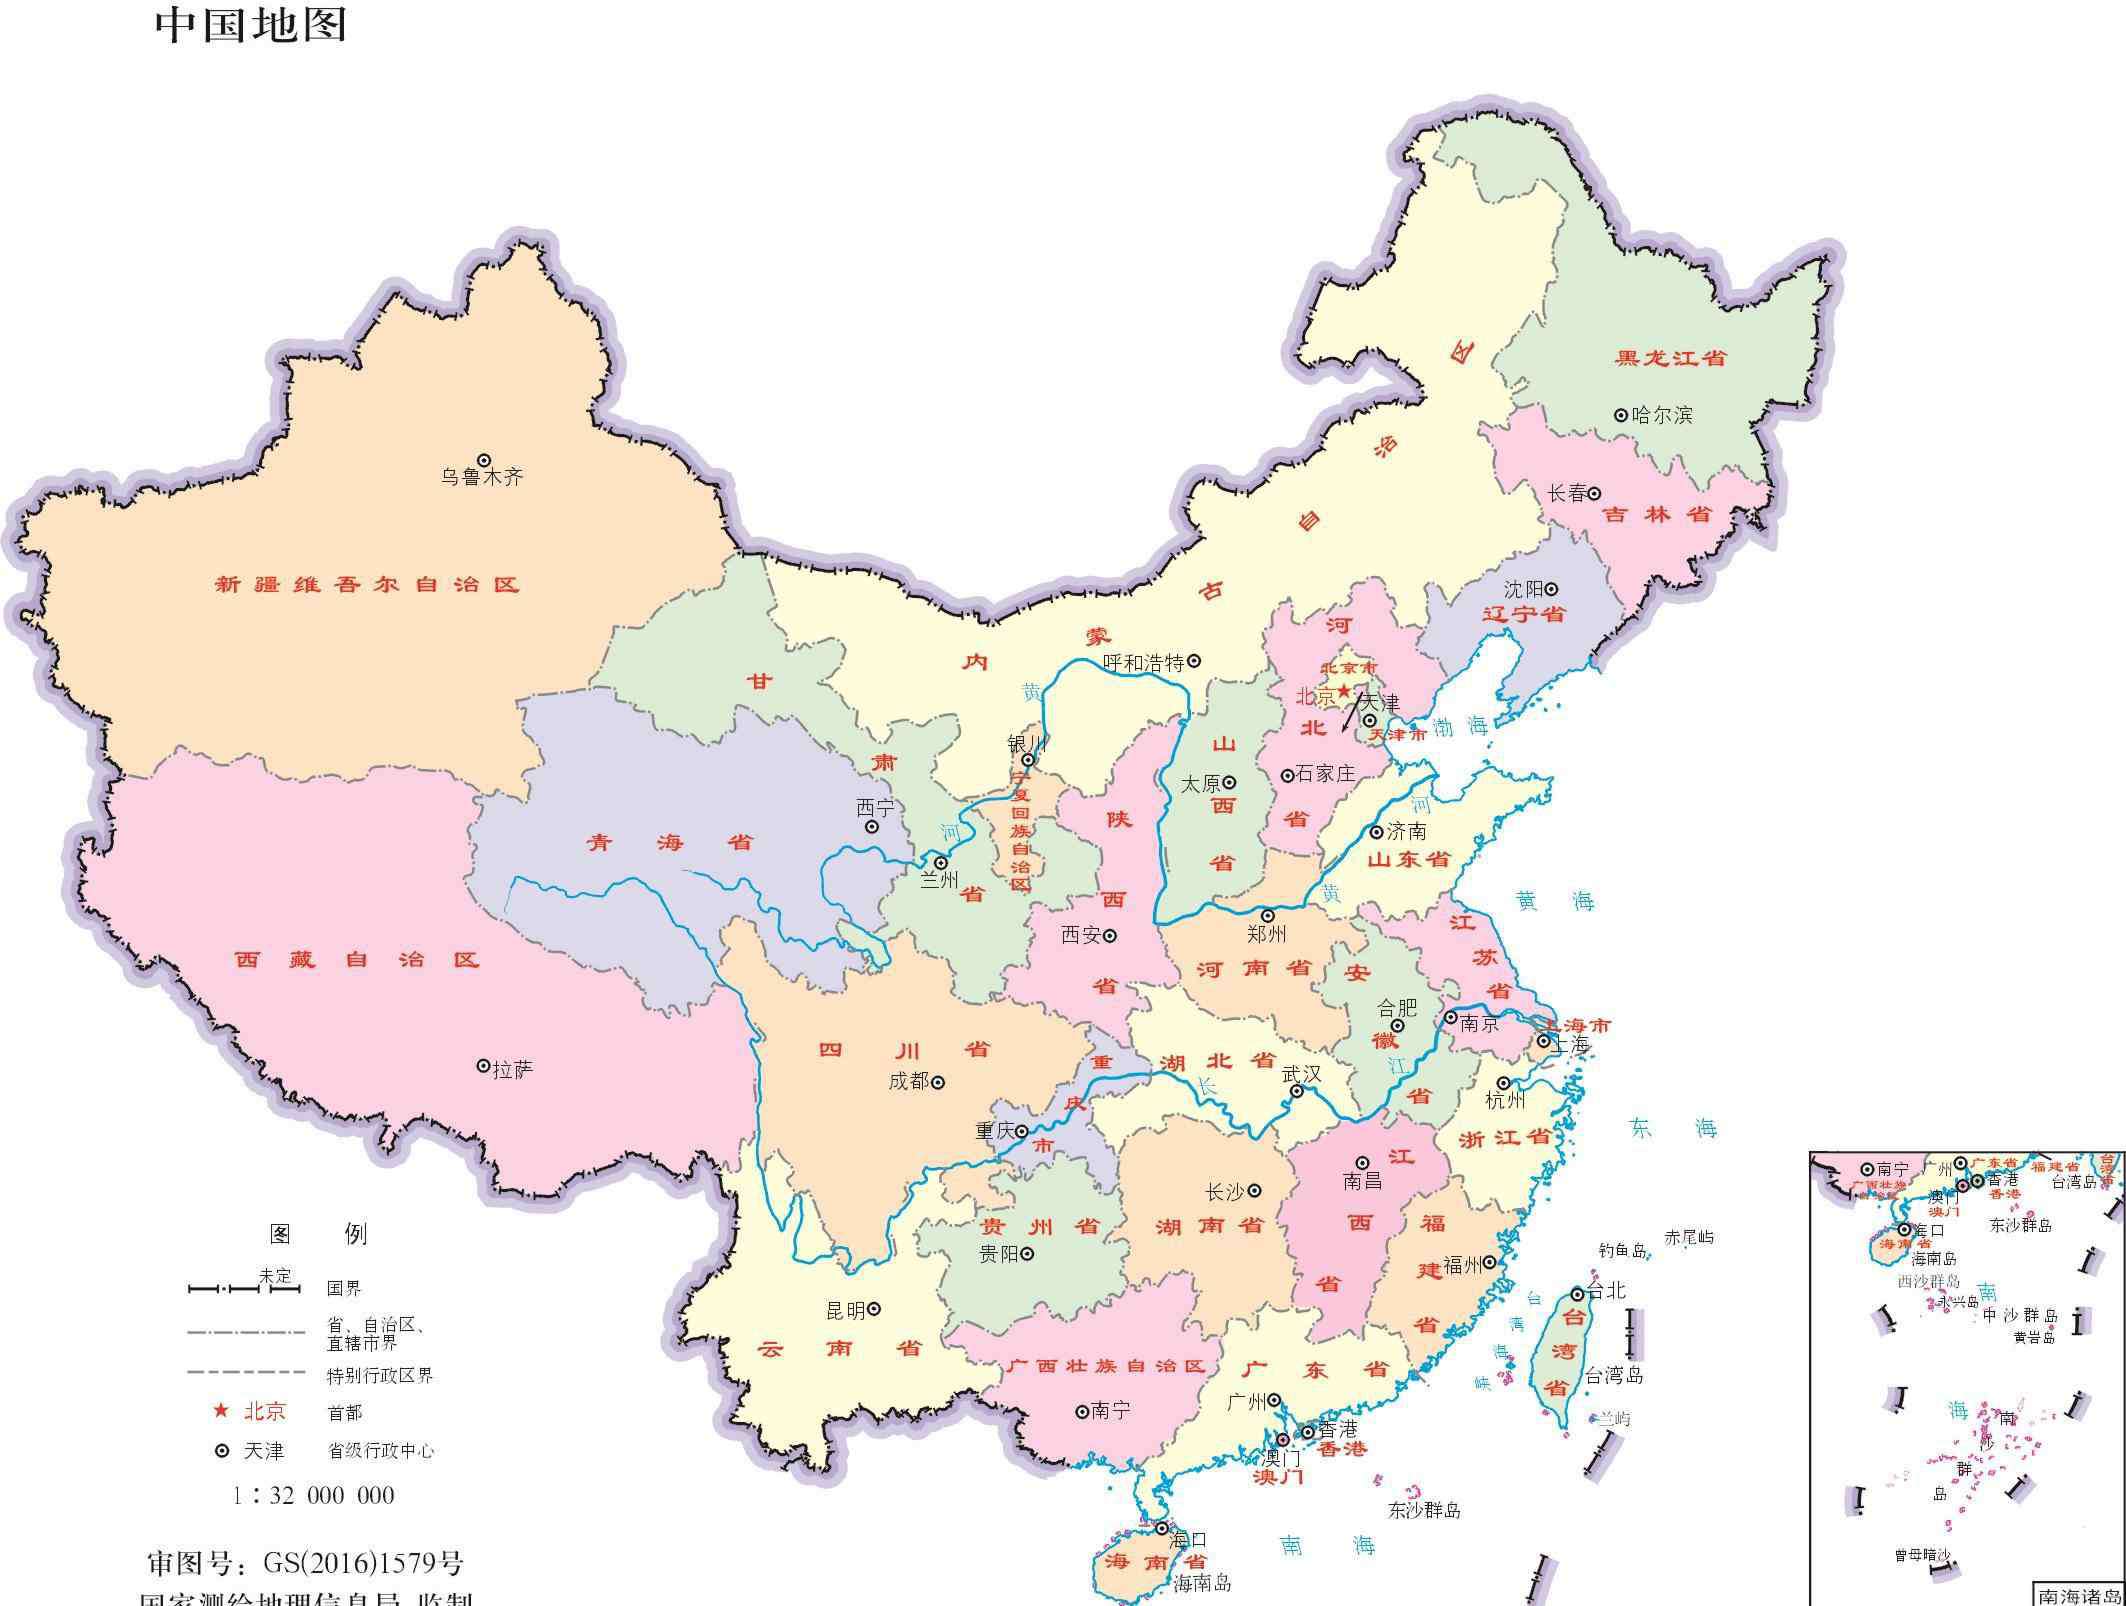 中国领土面积是多少 中国面积是多少平方公里 中国领土面积是多少